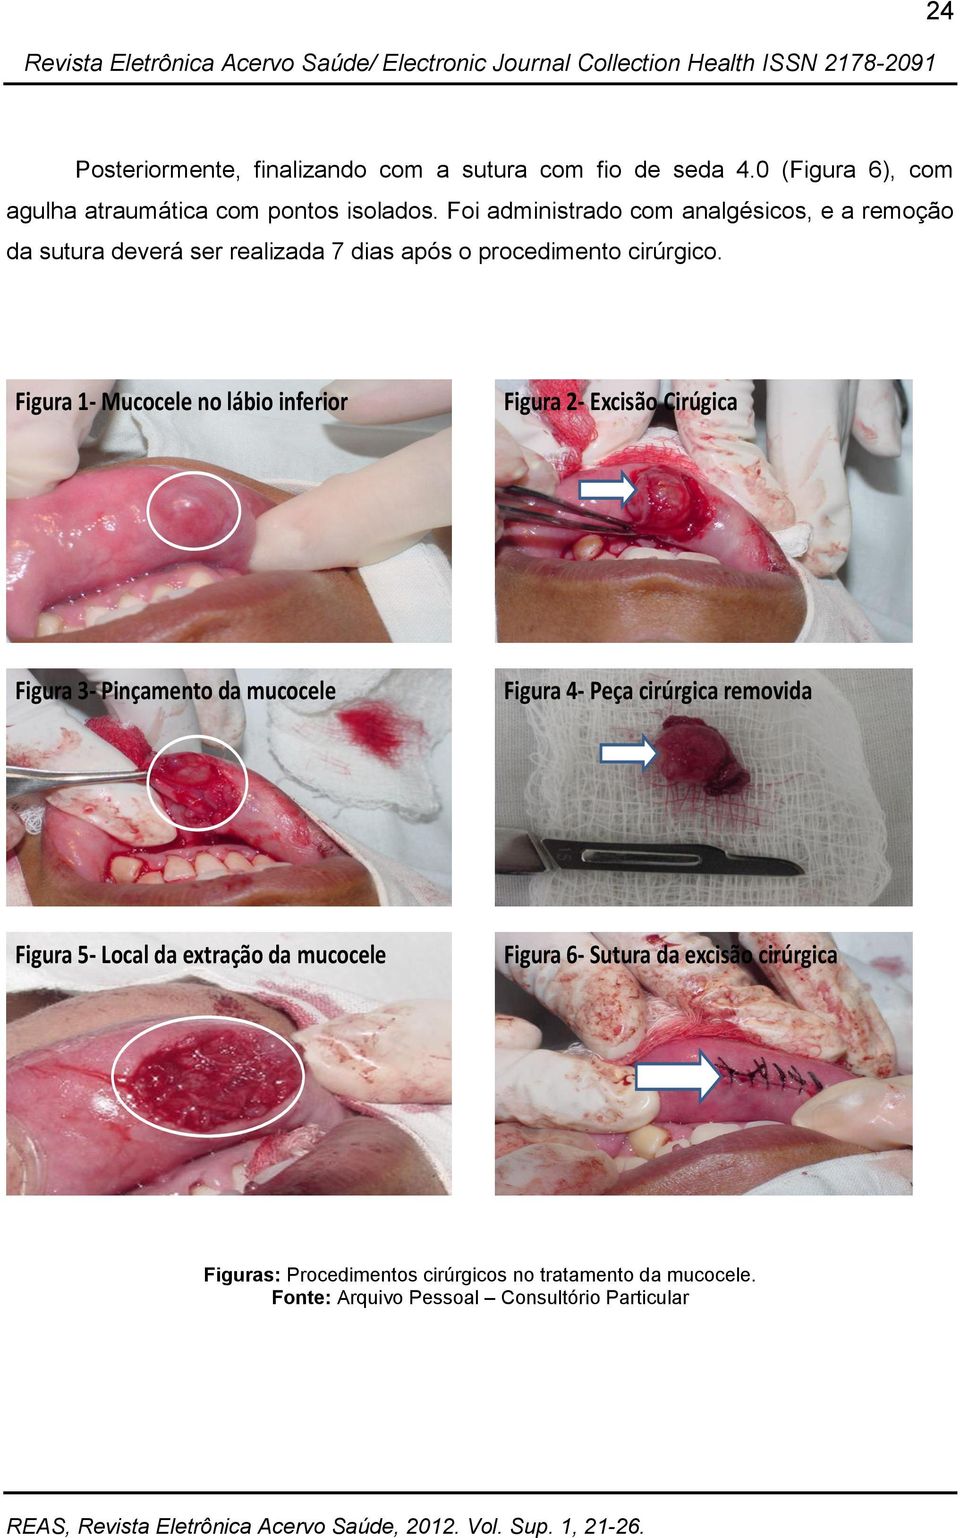 Figura 1- Mucocele no lábio inferior Figura 2- Excisão Cirúgica Figura 3- Pinçamento da mucocele Figura 4- Peça cirúrgica removida Figura